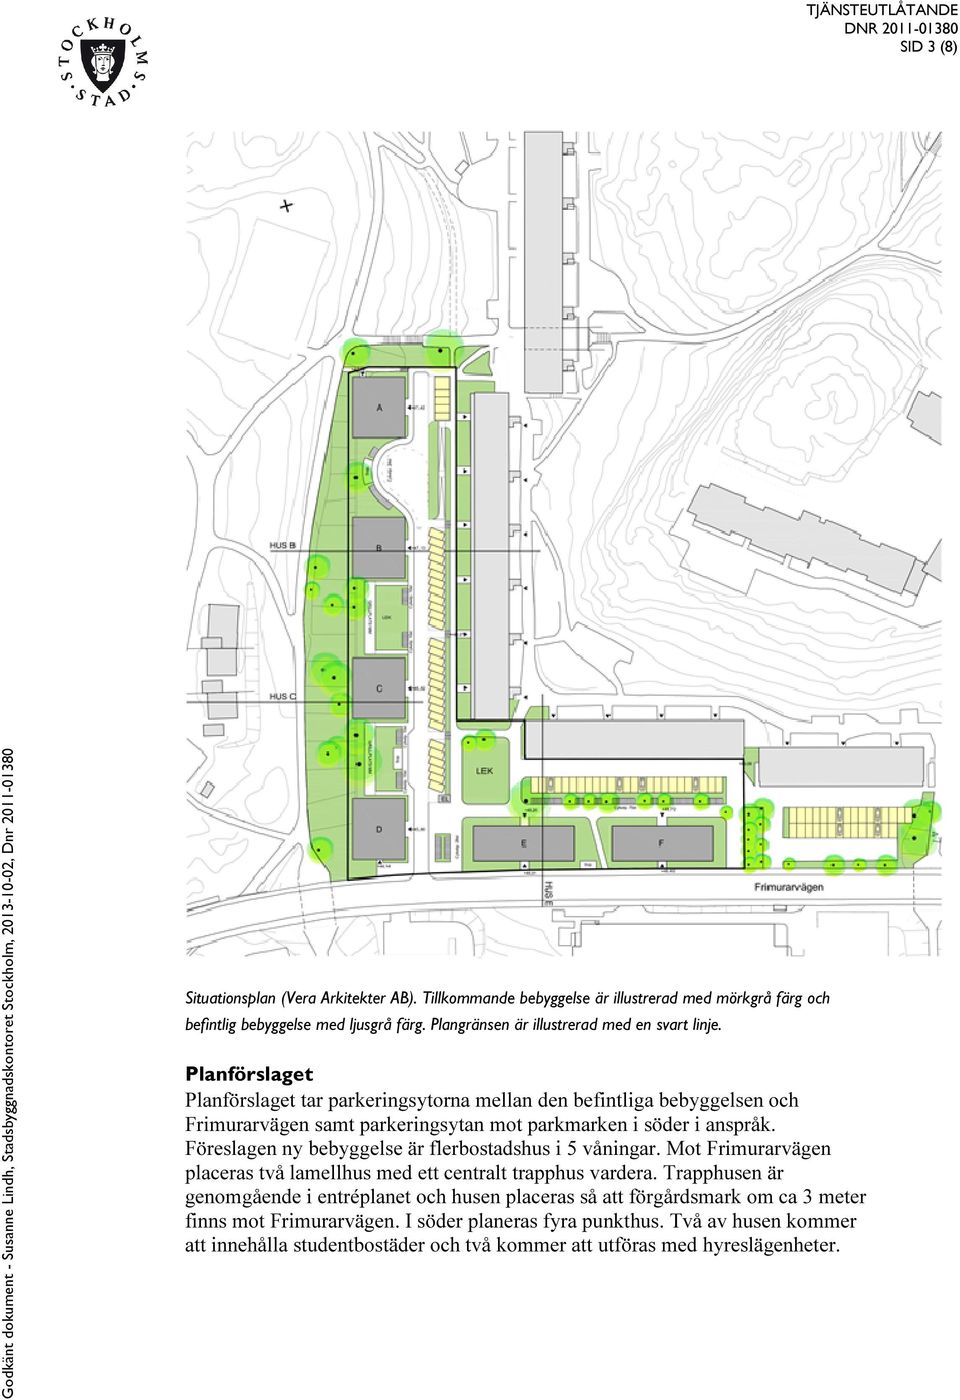 Planförslaget Planförslaget tar parkeringsytorna mellan den befintliga bebyggelsen och Frimurarvägen samt parkeringsytan mot parkmarken i söder i anspråk.